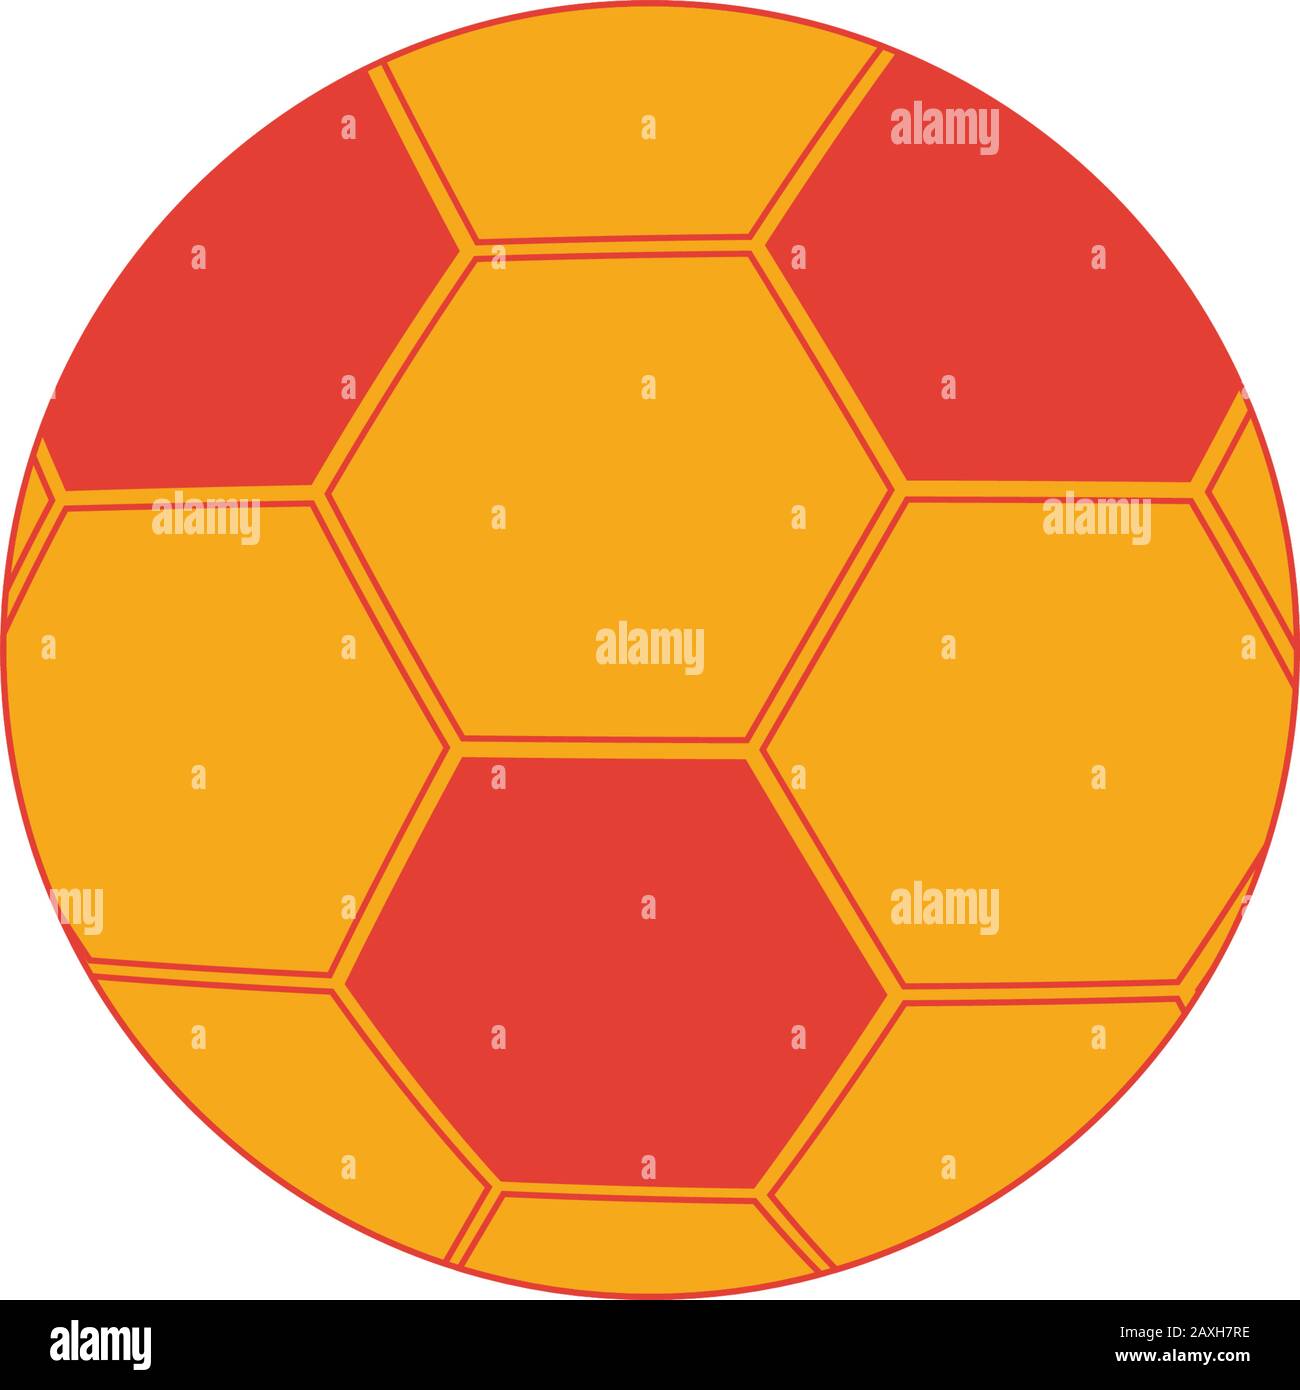 Icona pallone da calcio. Elemento semplice della collezione di icone di attrezzature sportive. Icona Creative Soccer Ball ui, ux, app, software e infografiche. Illustrazione Vettoriale